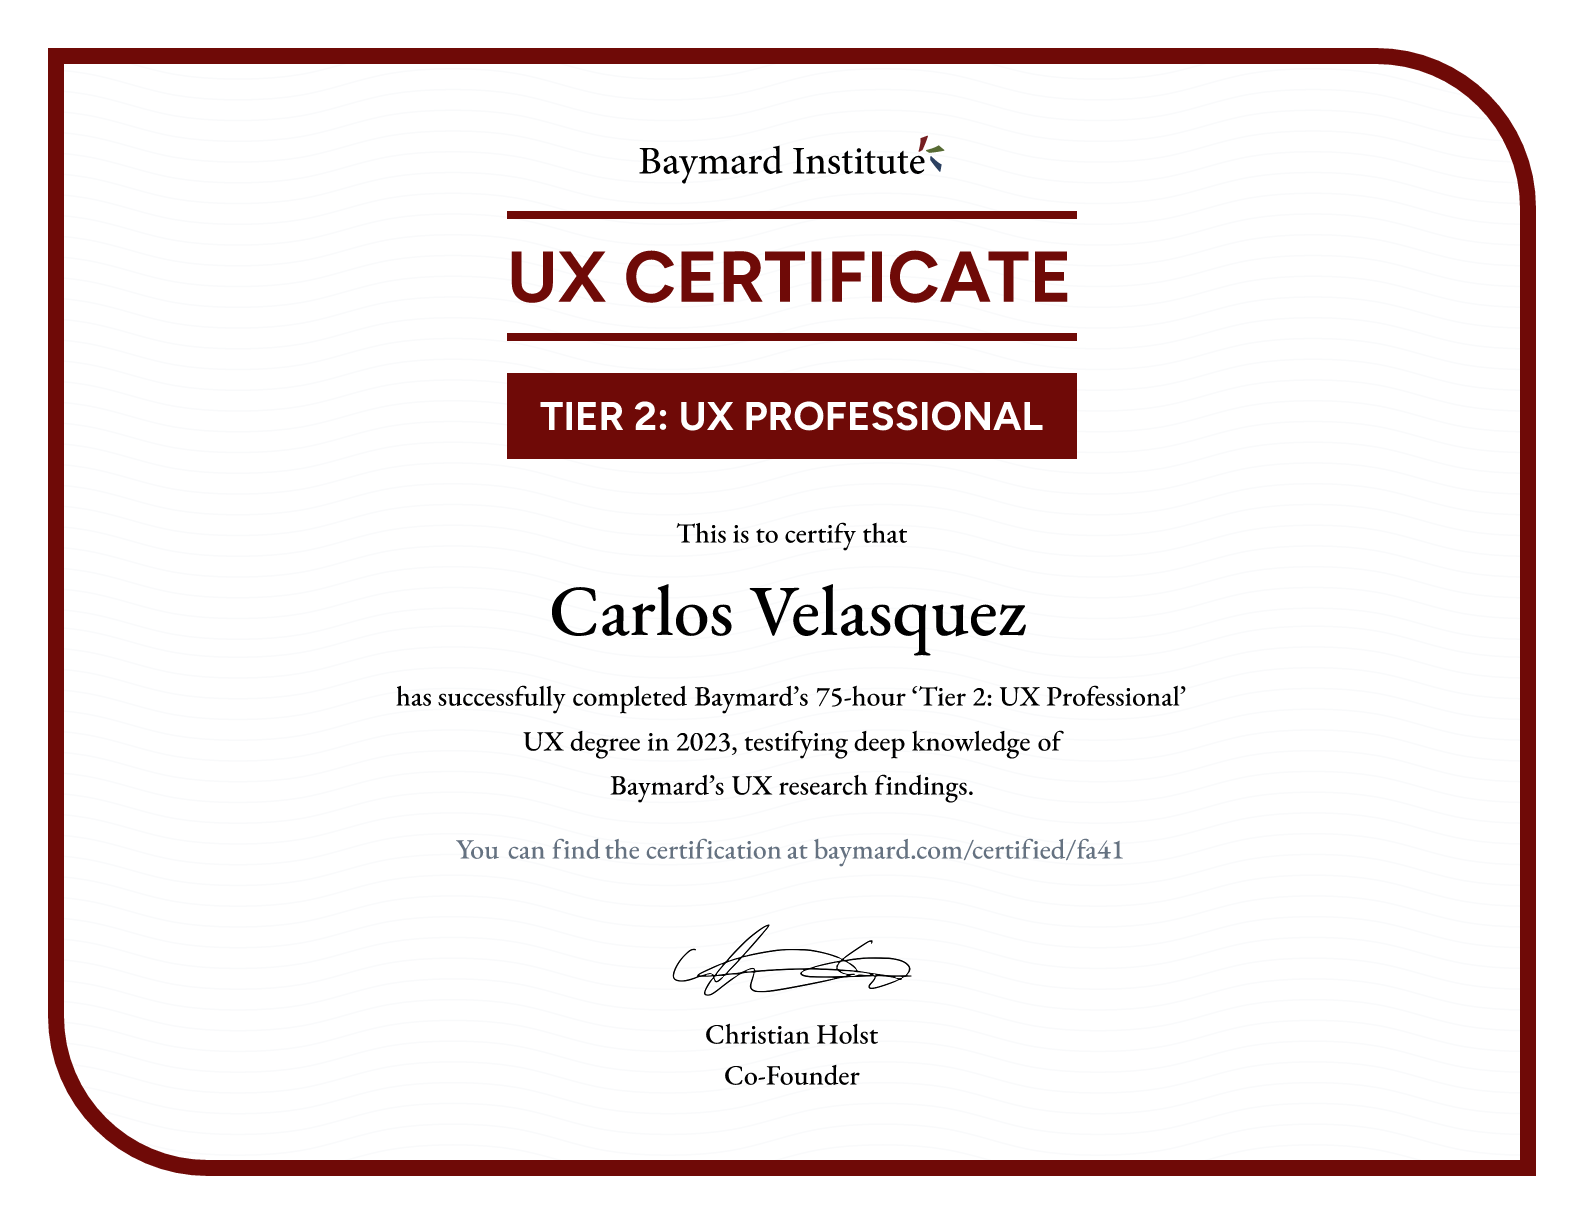 Carlos Velasquez’s certificate